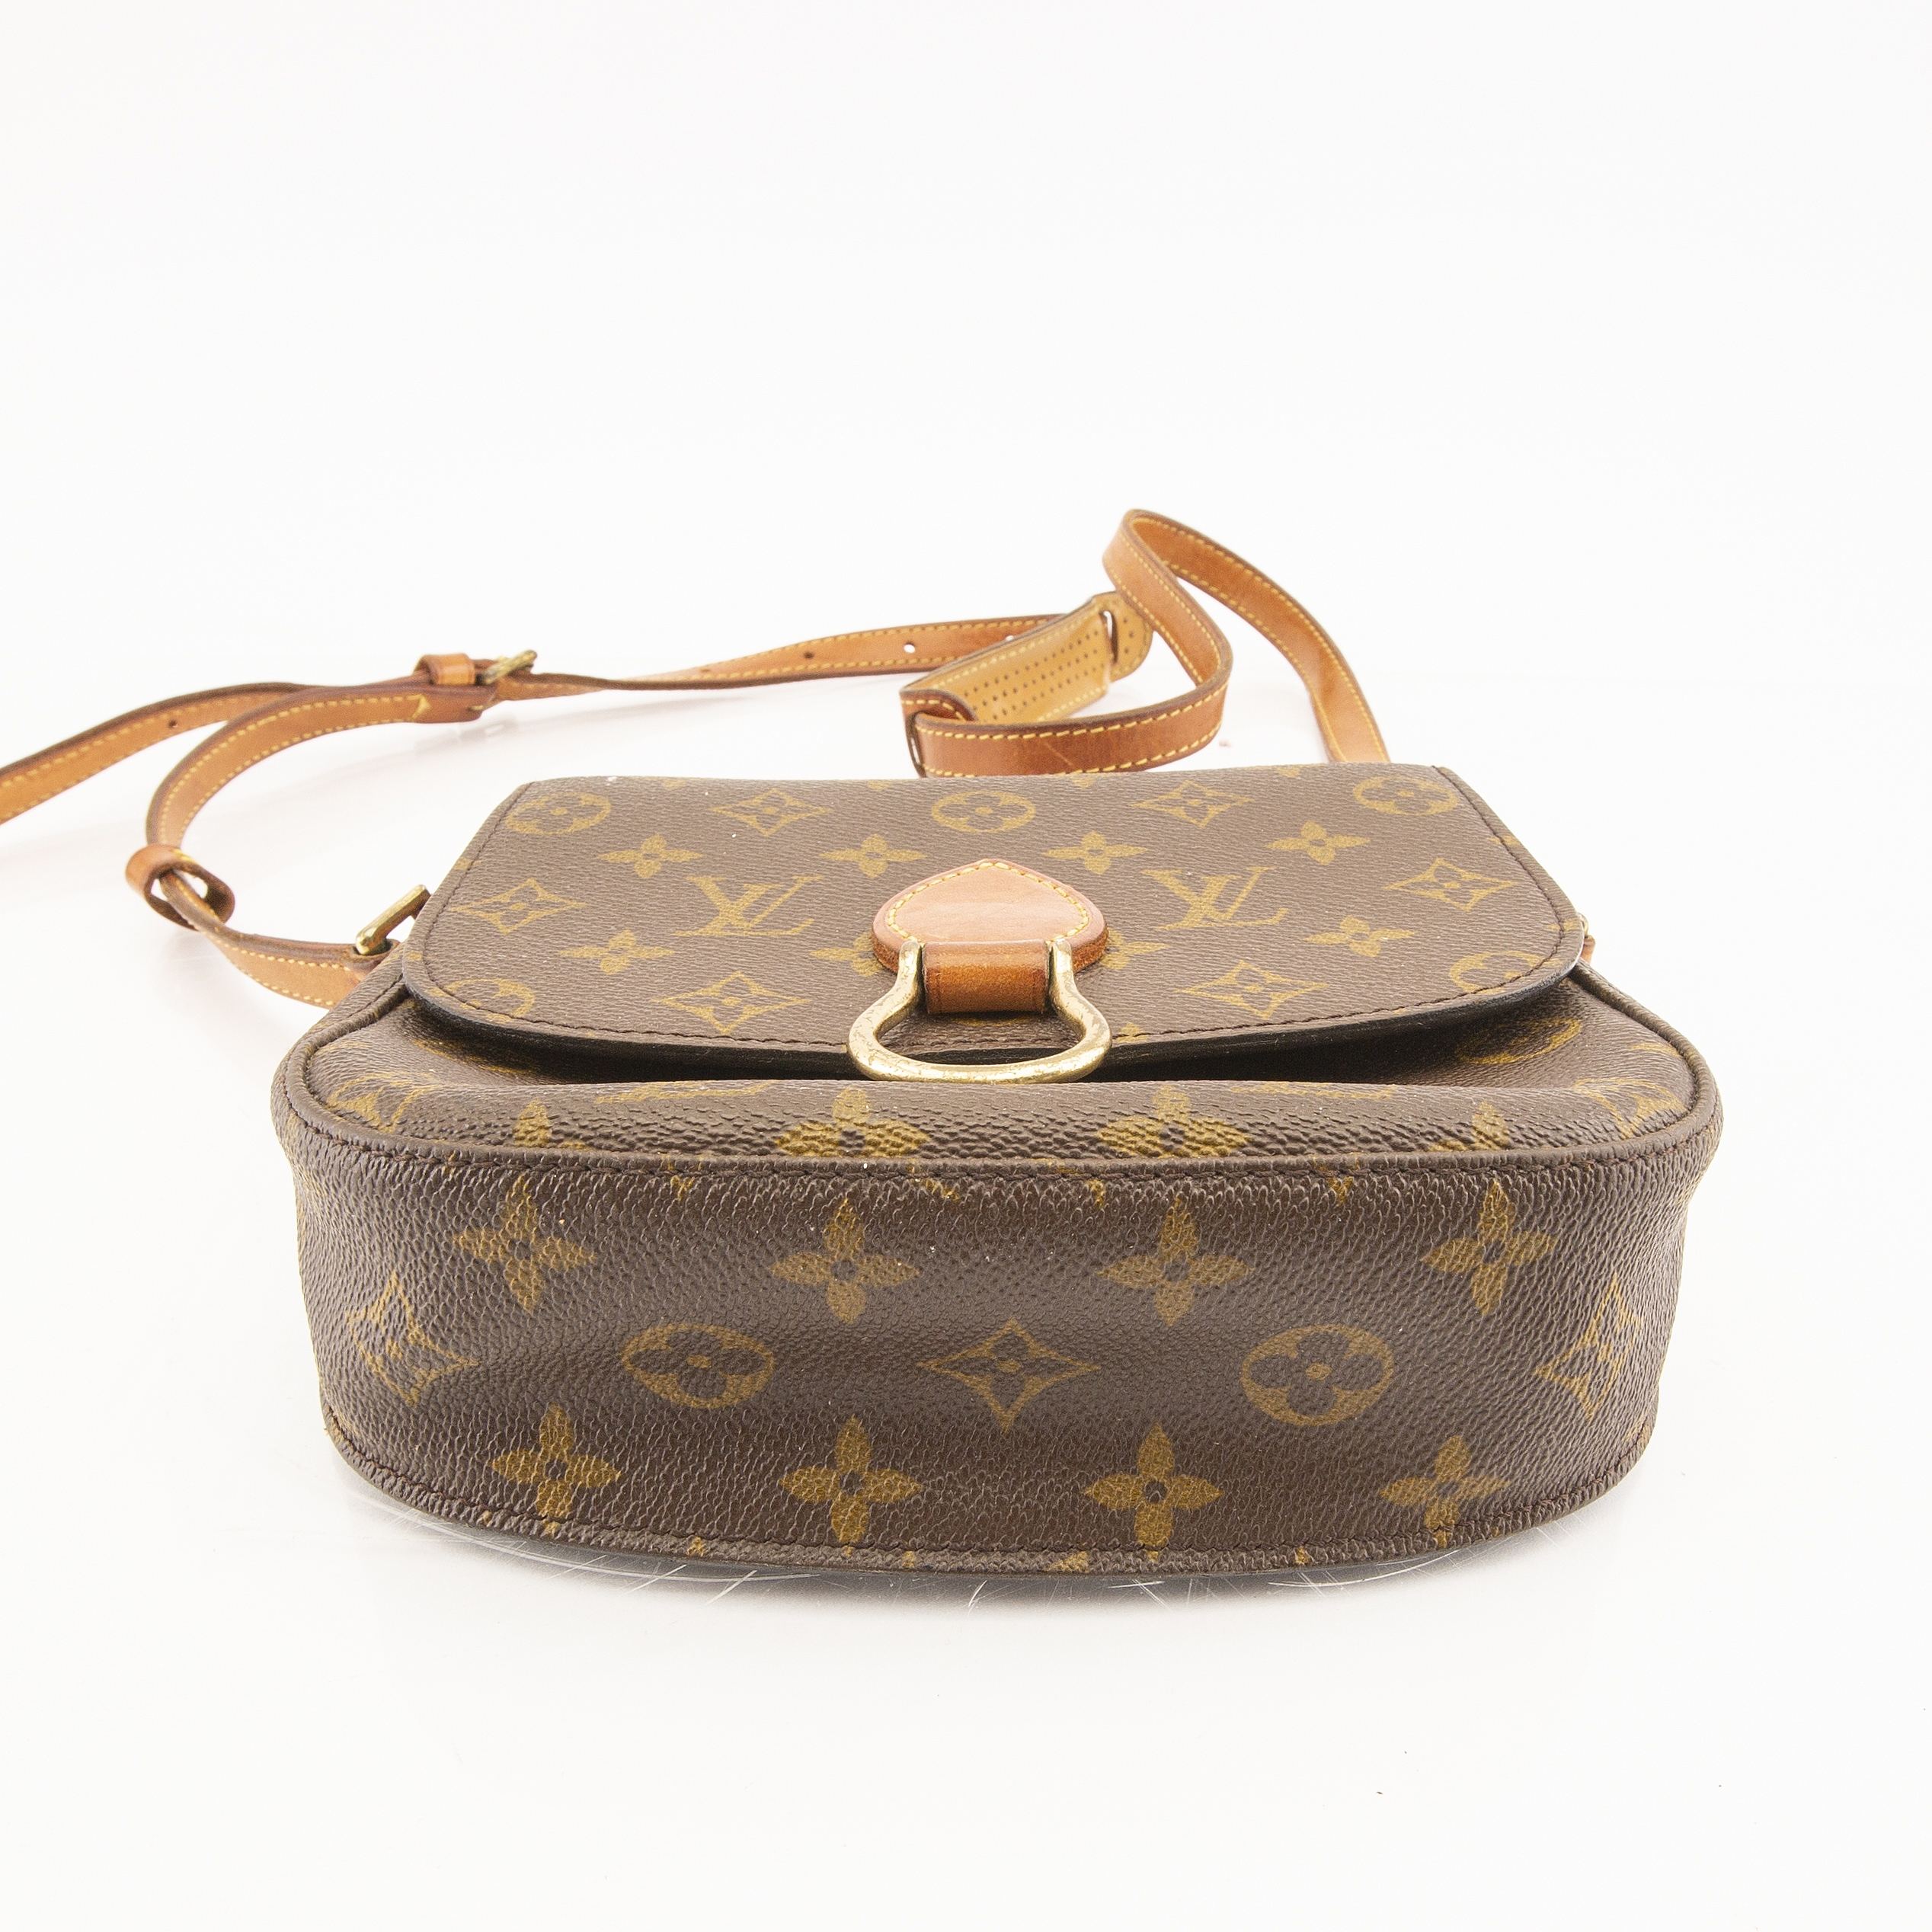 At Auction: LOUIS VUITTON Handbag ALMA PM, Coll.: 2014.